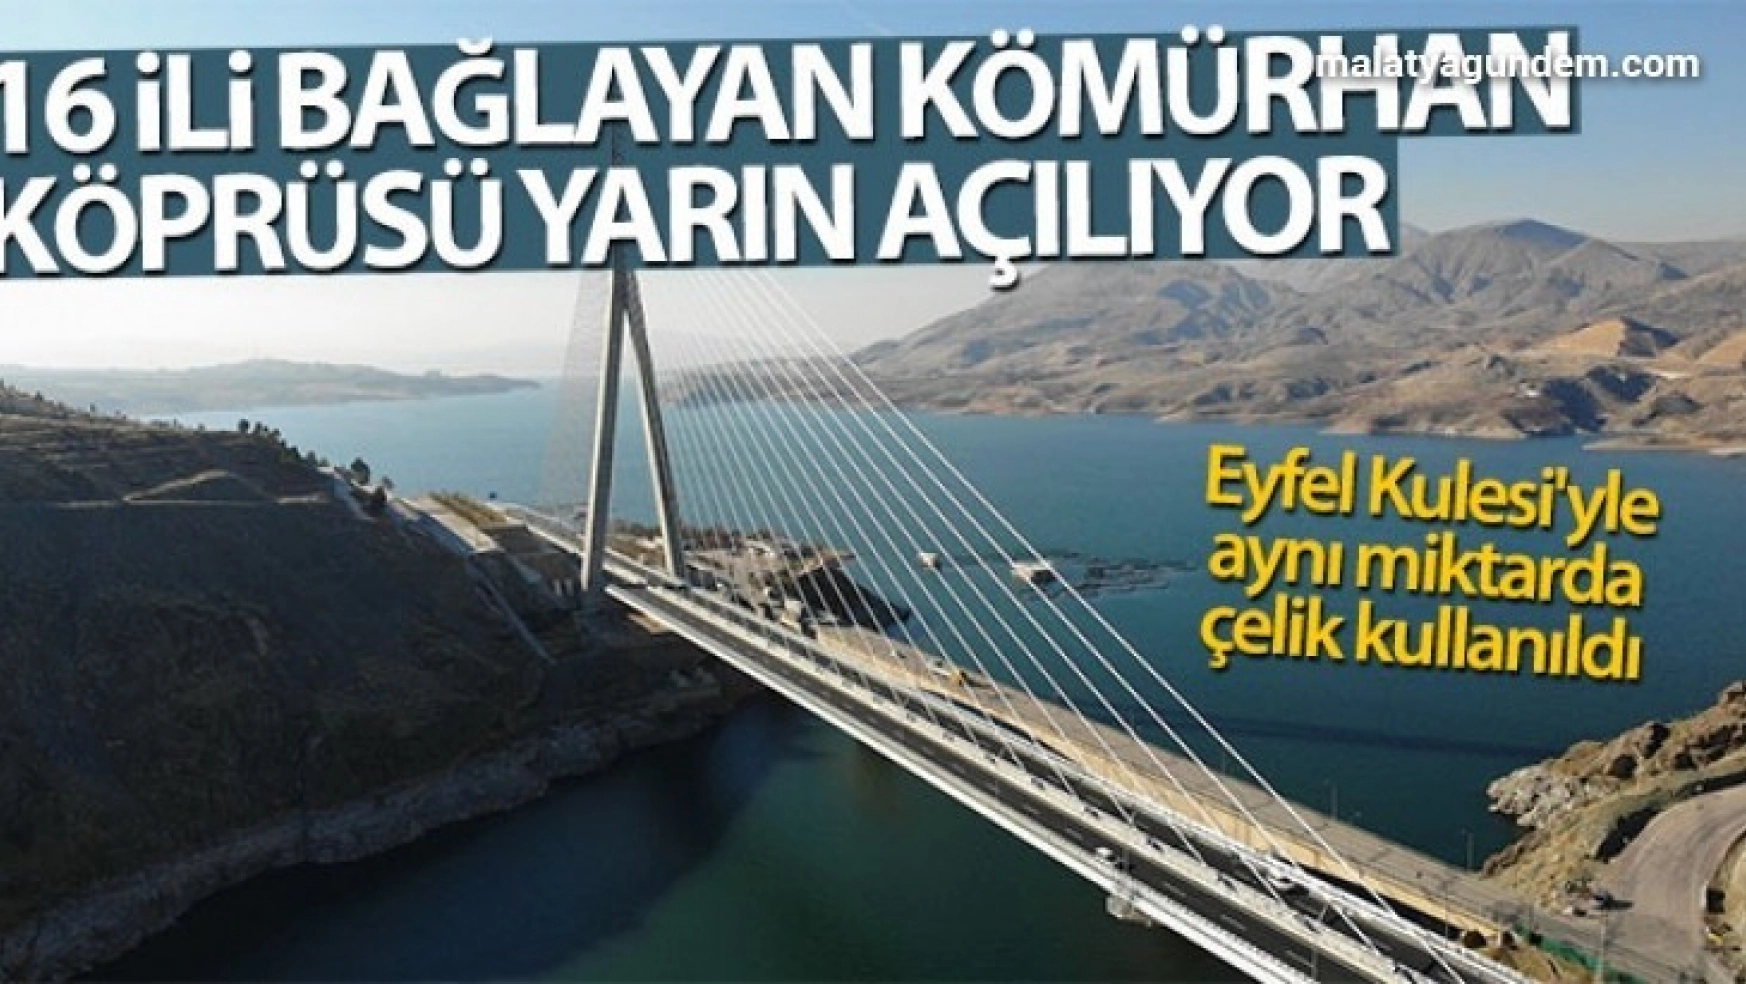 Kömürhan Köprüsünün açılışını Erdoğan yapacak